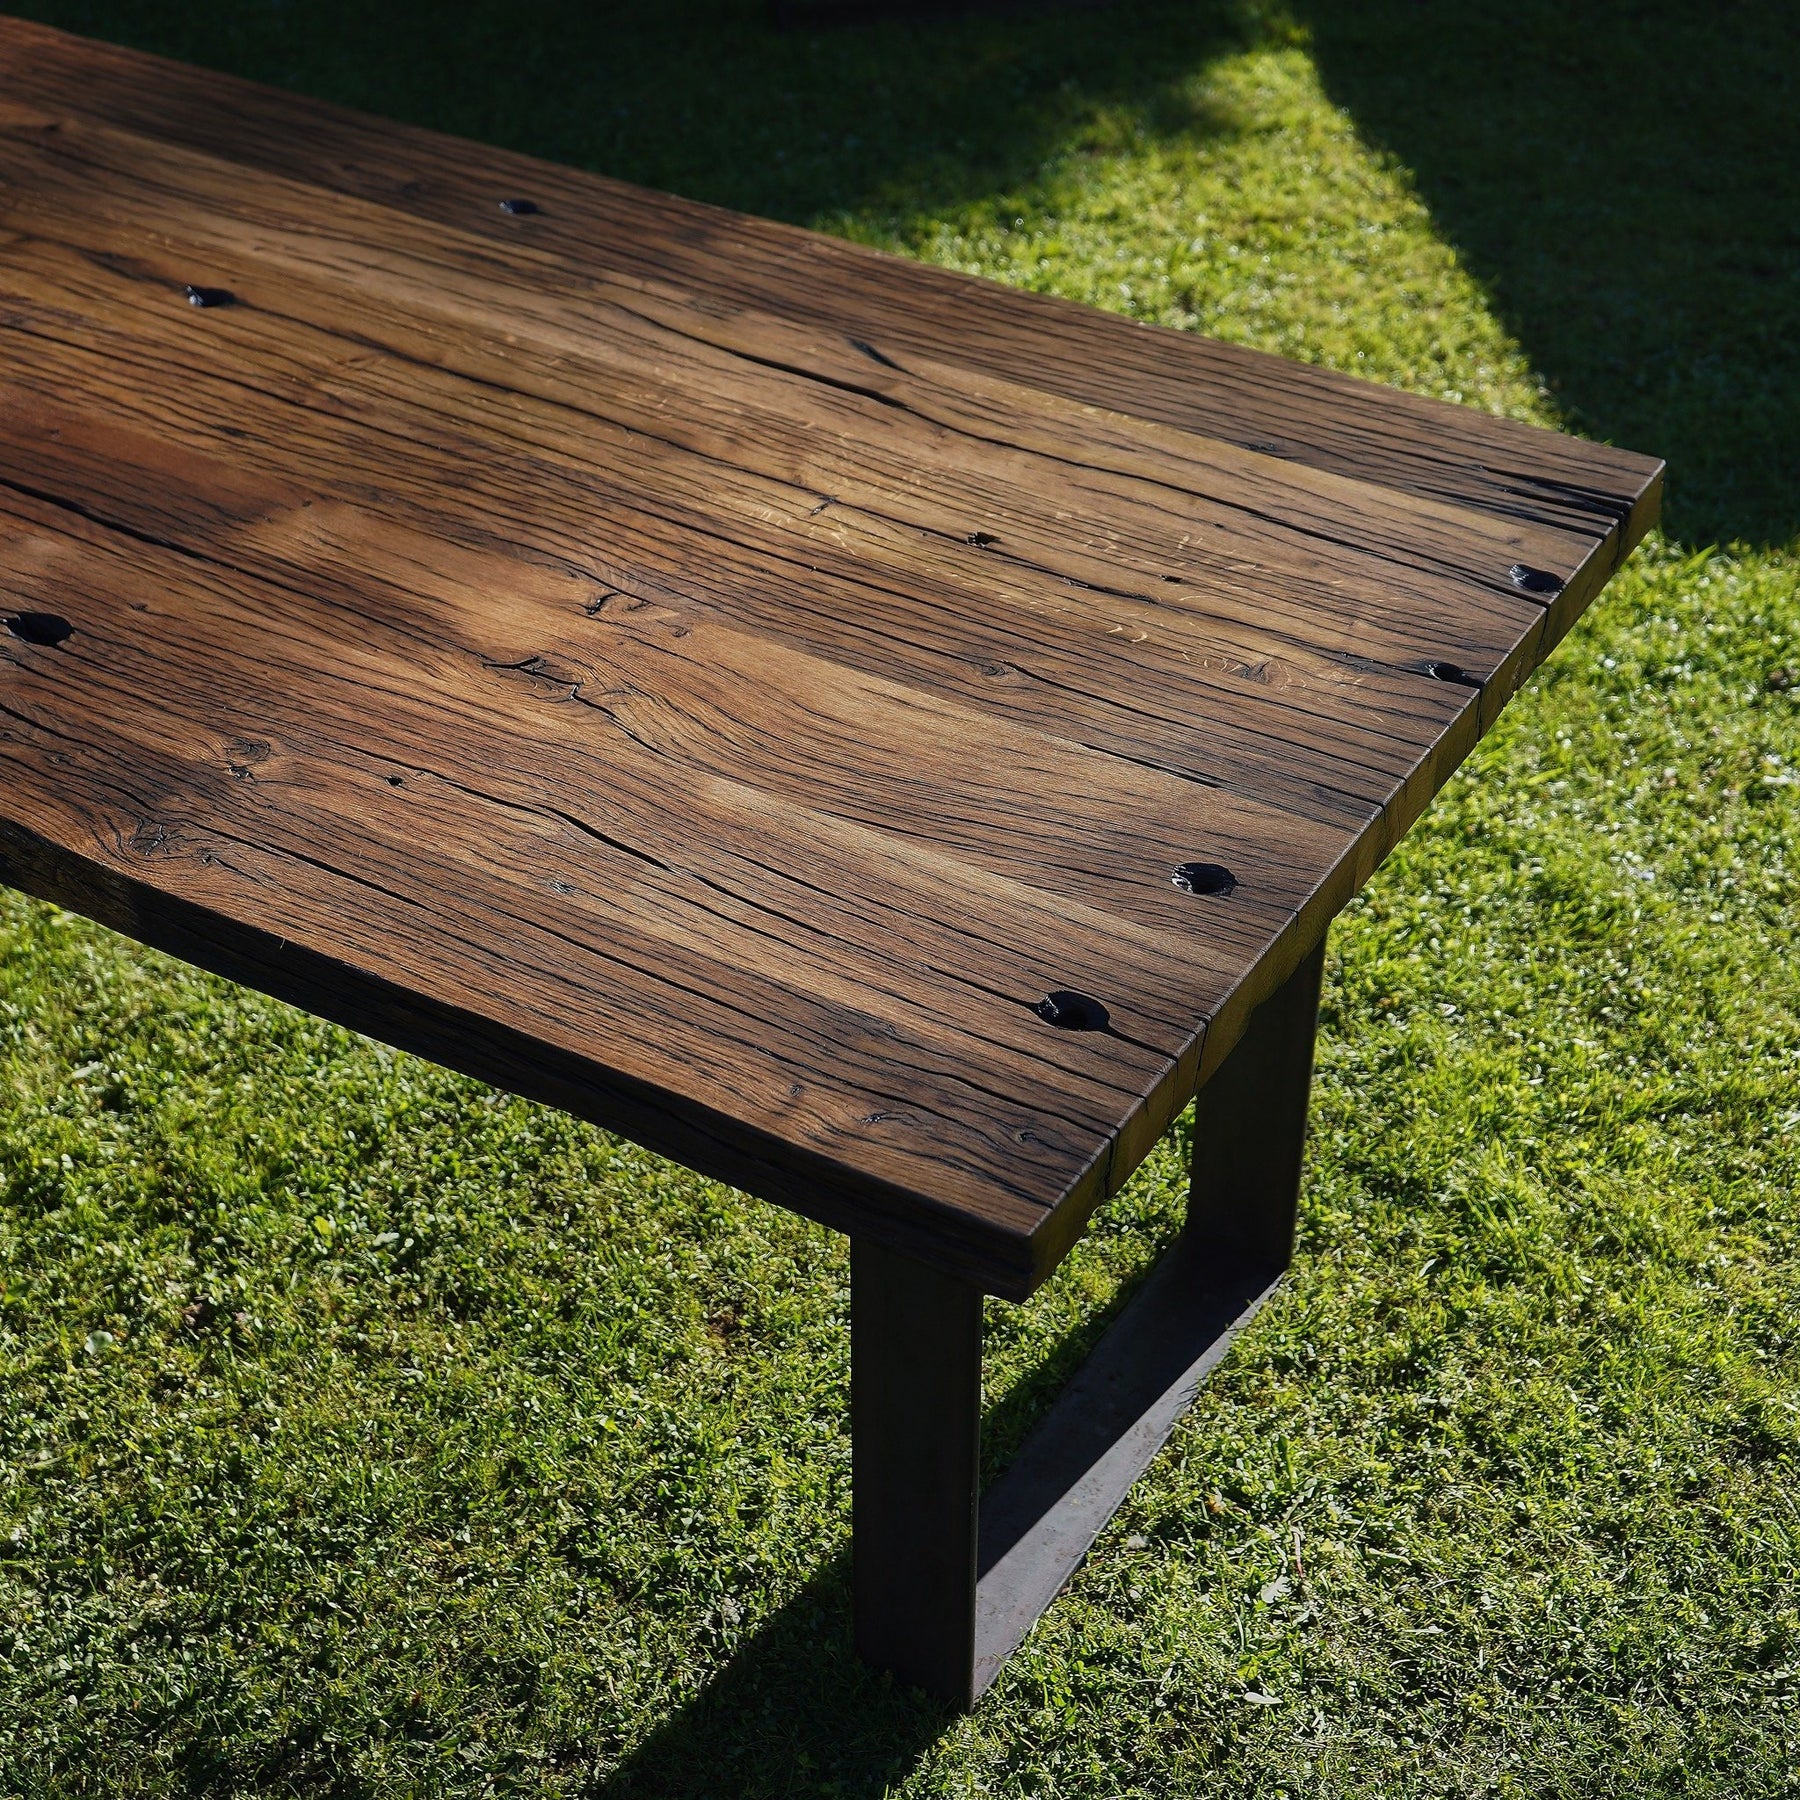 Tisch aus Altholz Eiche mit geschliffener Oberfläche aus Rohstahlframes im Gras